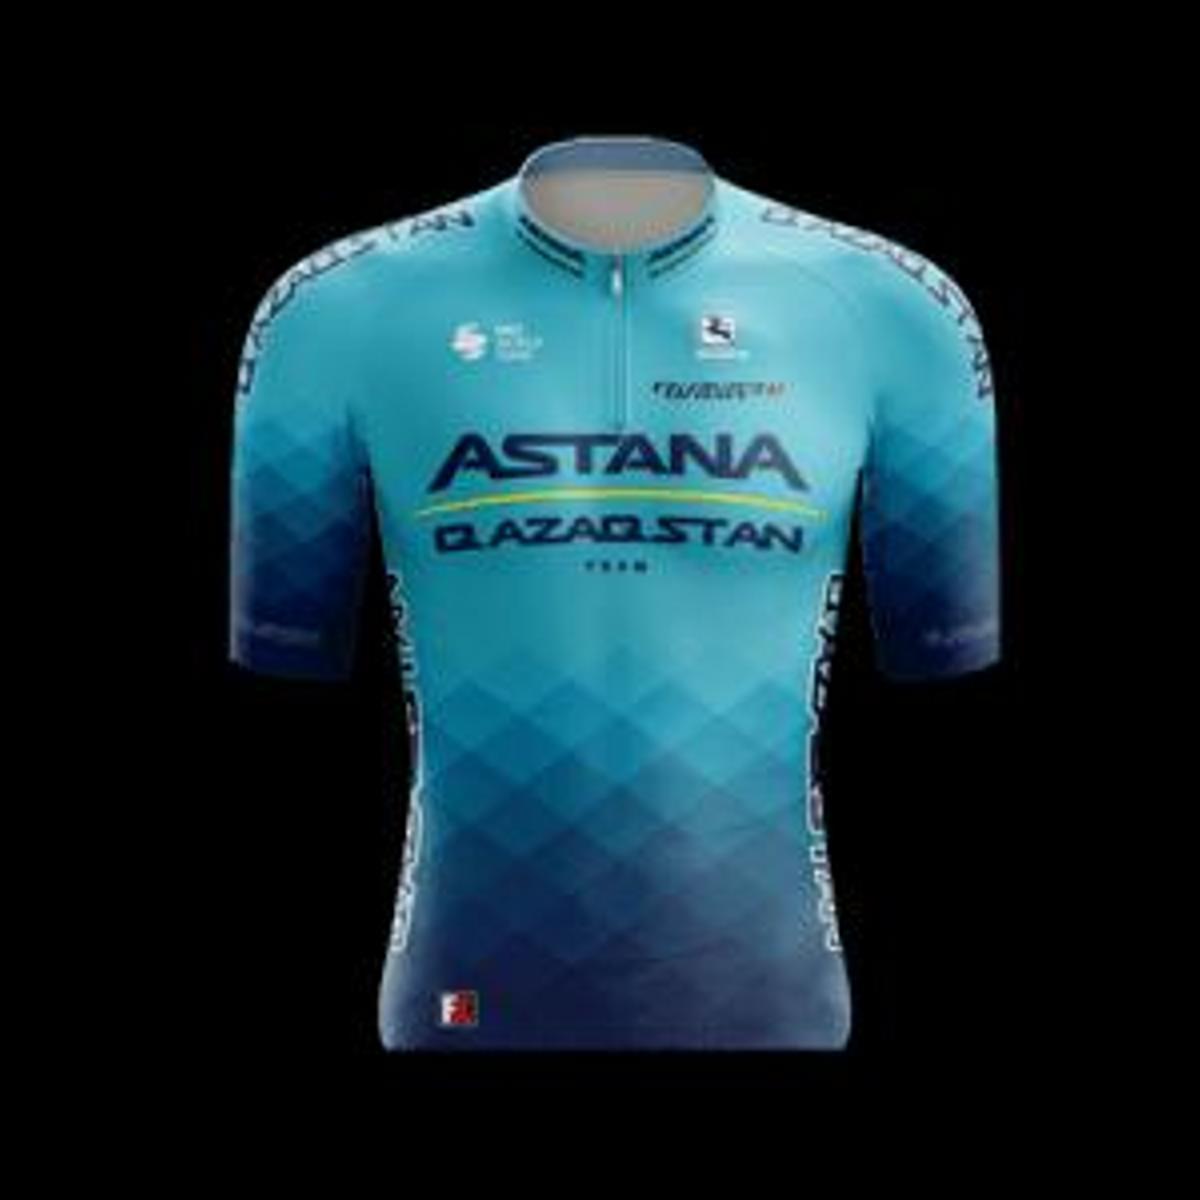 Maillot del Astana Qazaqstan Team.